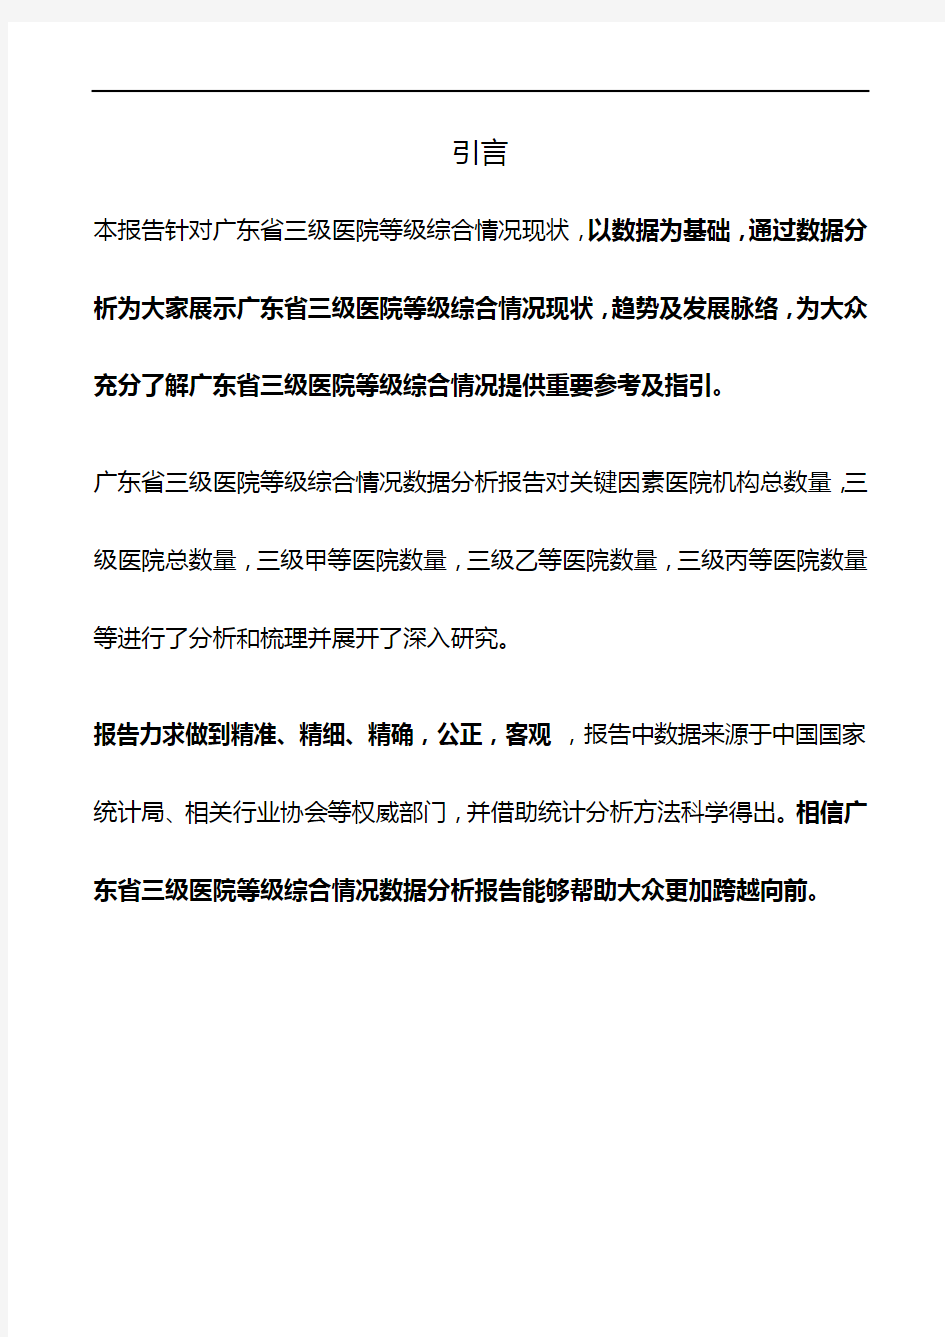 广东省三级医院等级综合情况3年数据分析报告2019版